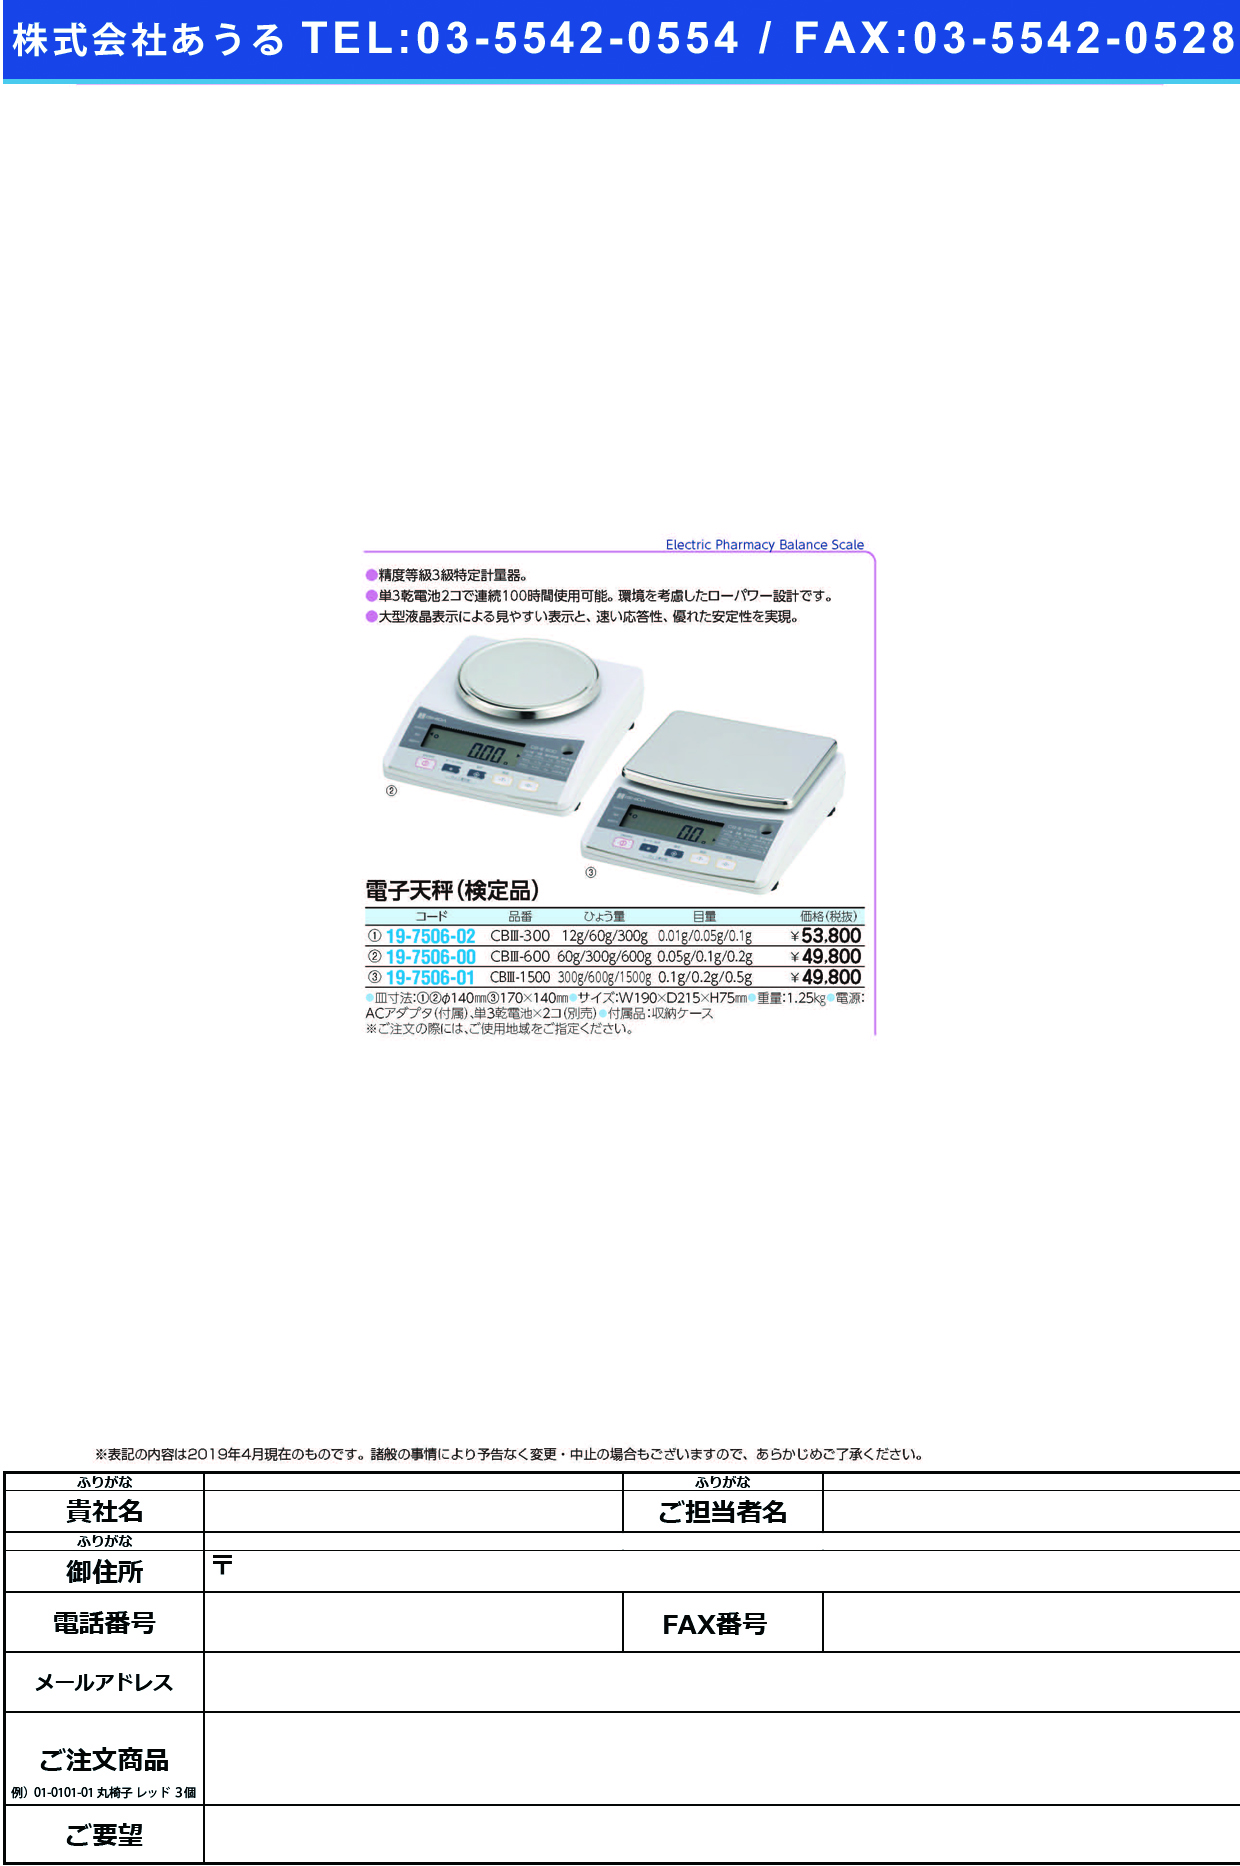 (19-7506-01)電子天秤（検定品） CB3-1500 ﾃﾞﾝｼﾃﾝﾋﾞﾝ(ｹﾝﾃｲﾋﾝ)【1台単位】【2019年カタログ商品】